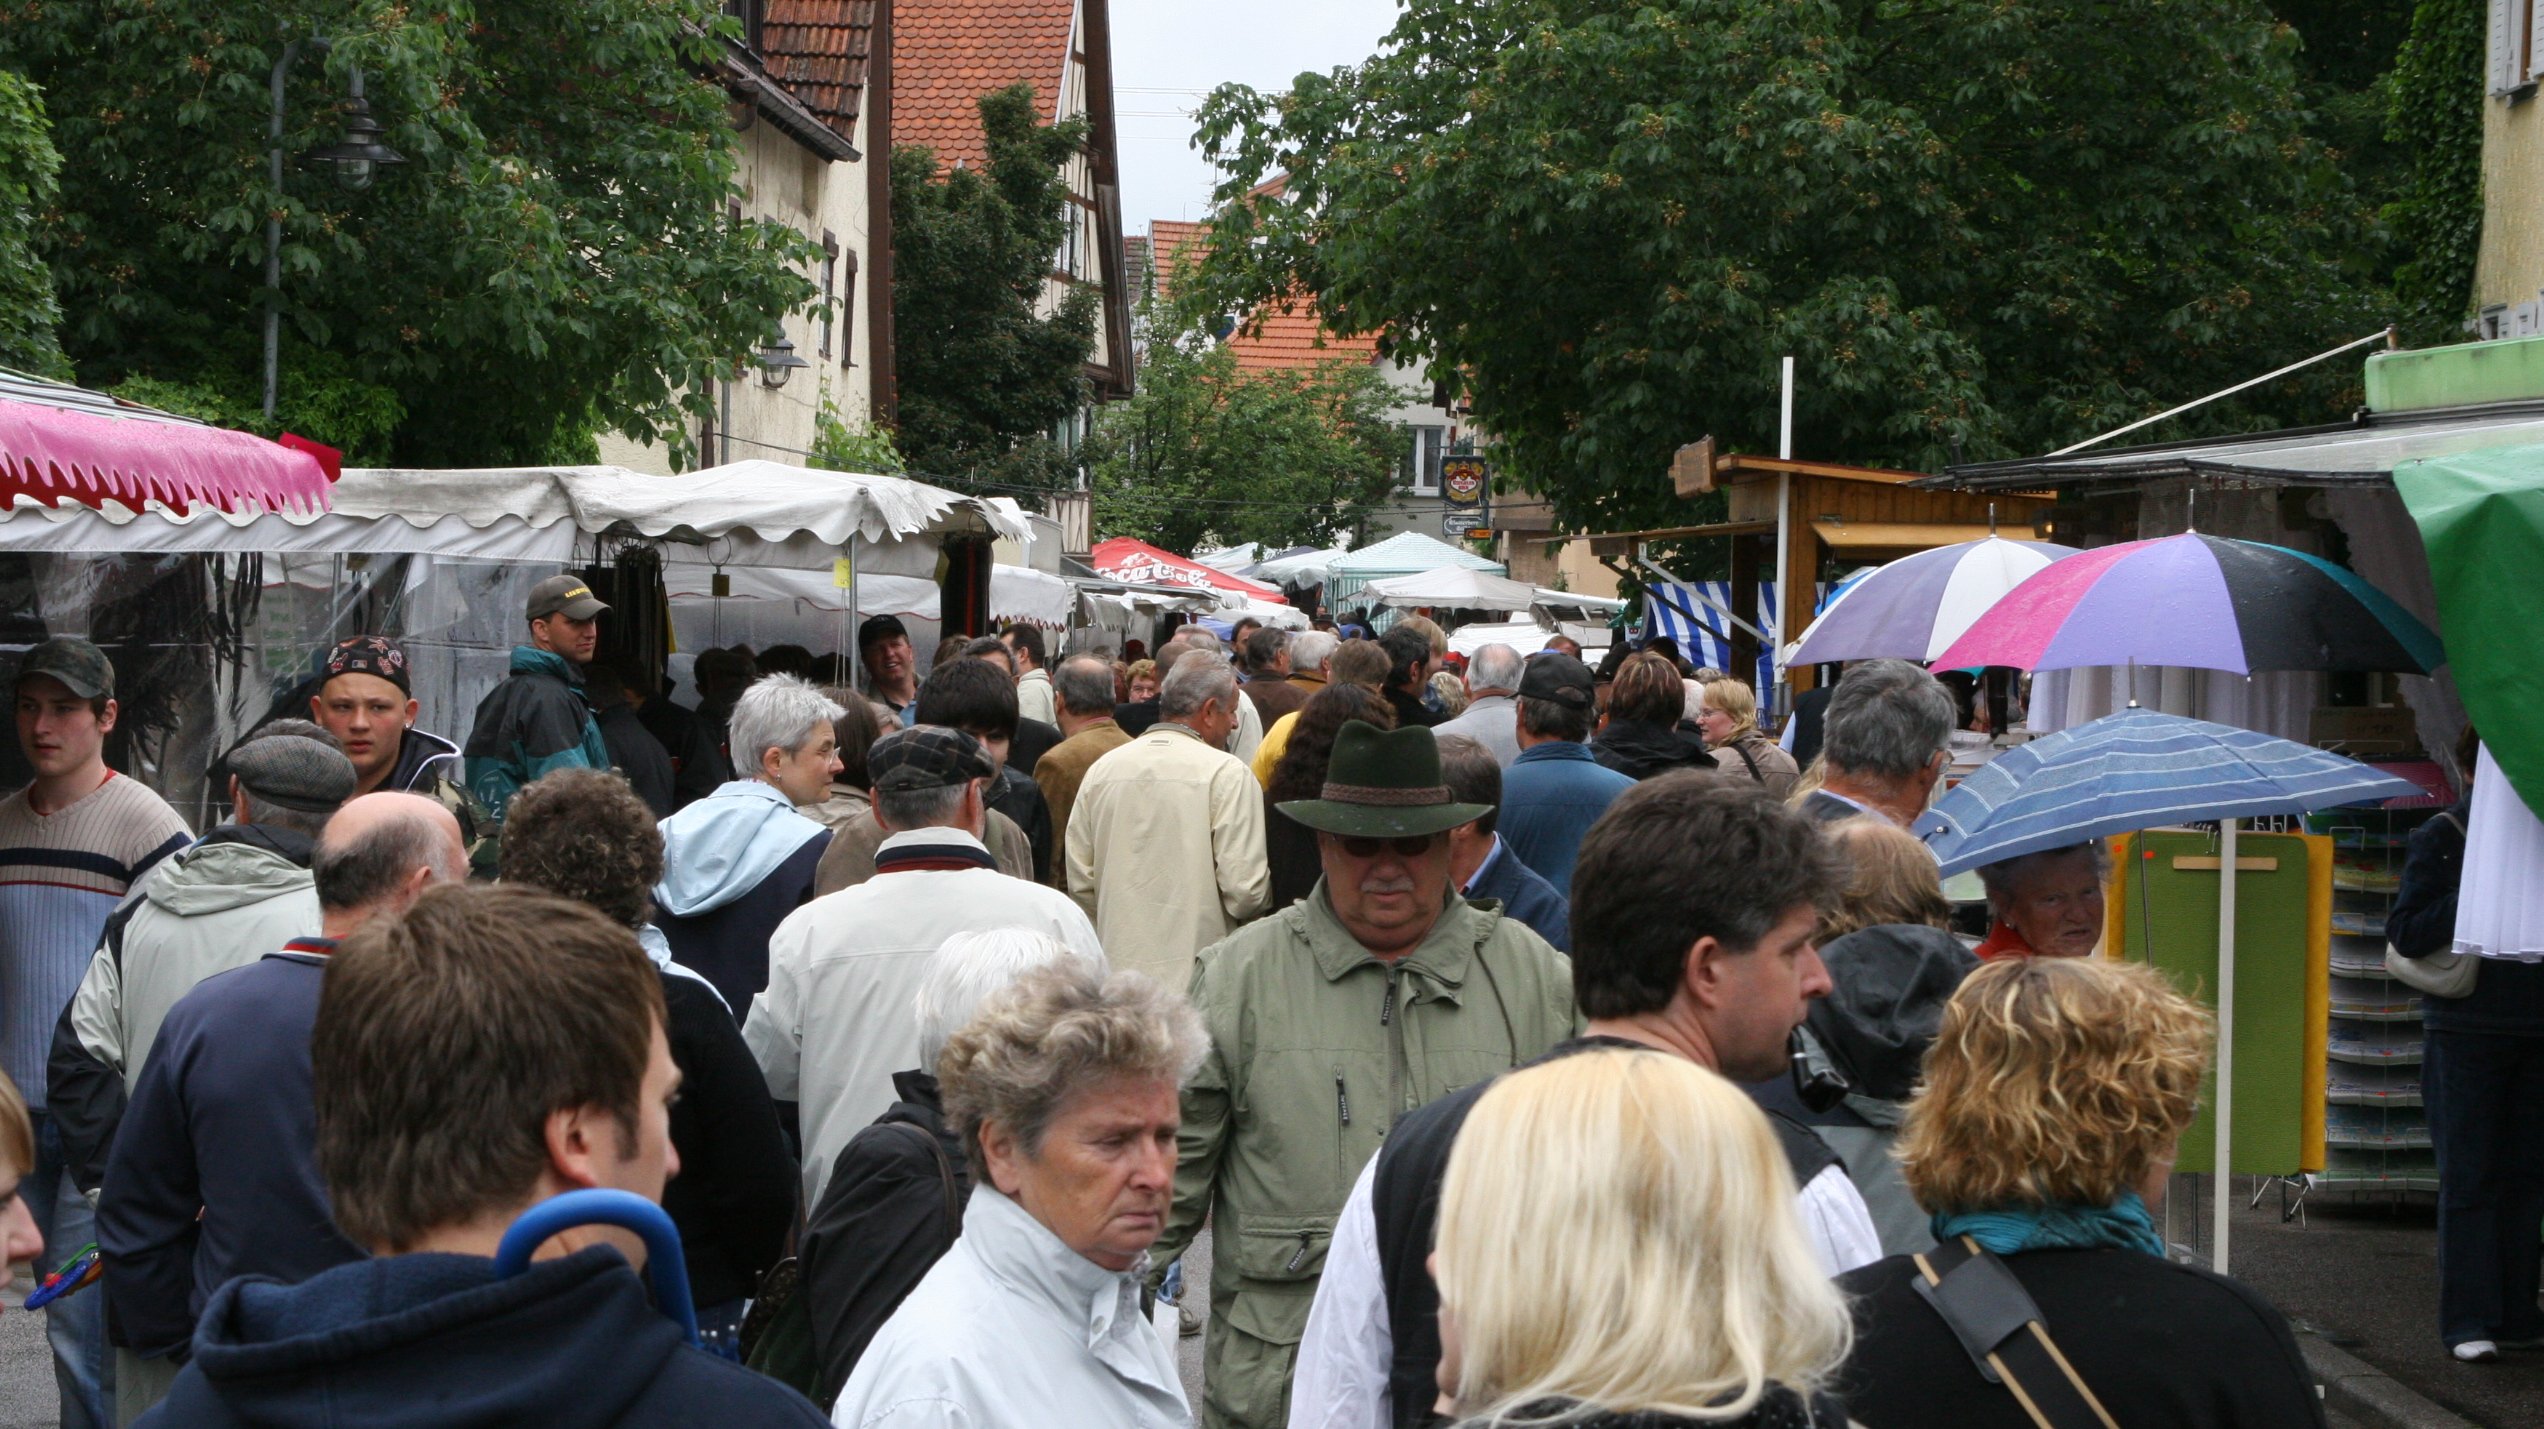 Horrheimer Pfingstmarkt